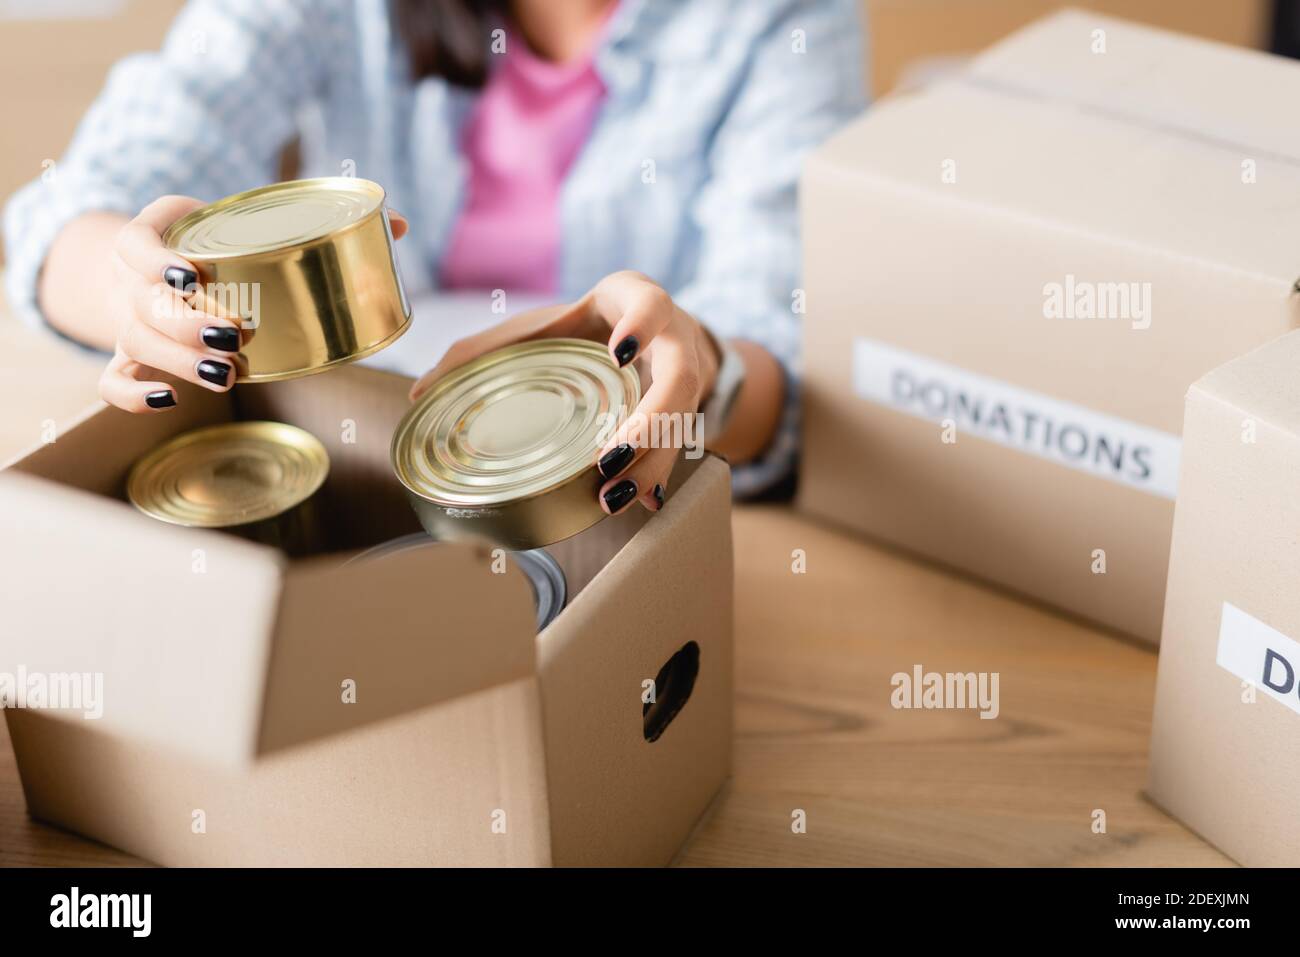 Vue rognée d'une femme tenant des aliments en conserve près de la boîte en carton dans la charité centre sur un fond flou Banque D'Images